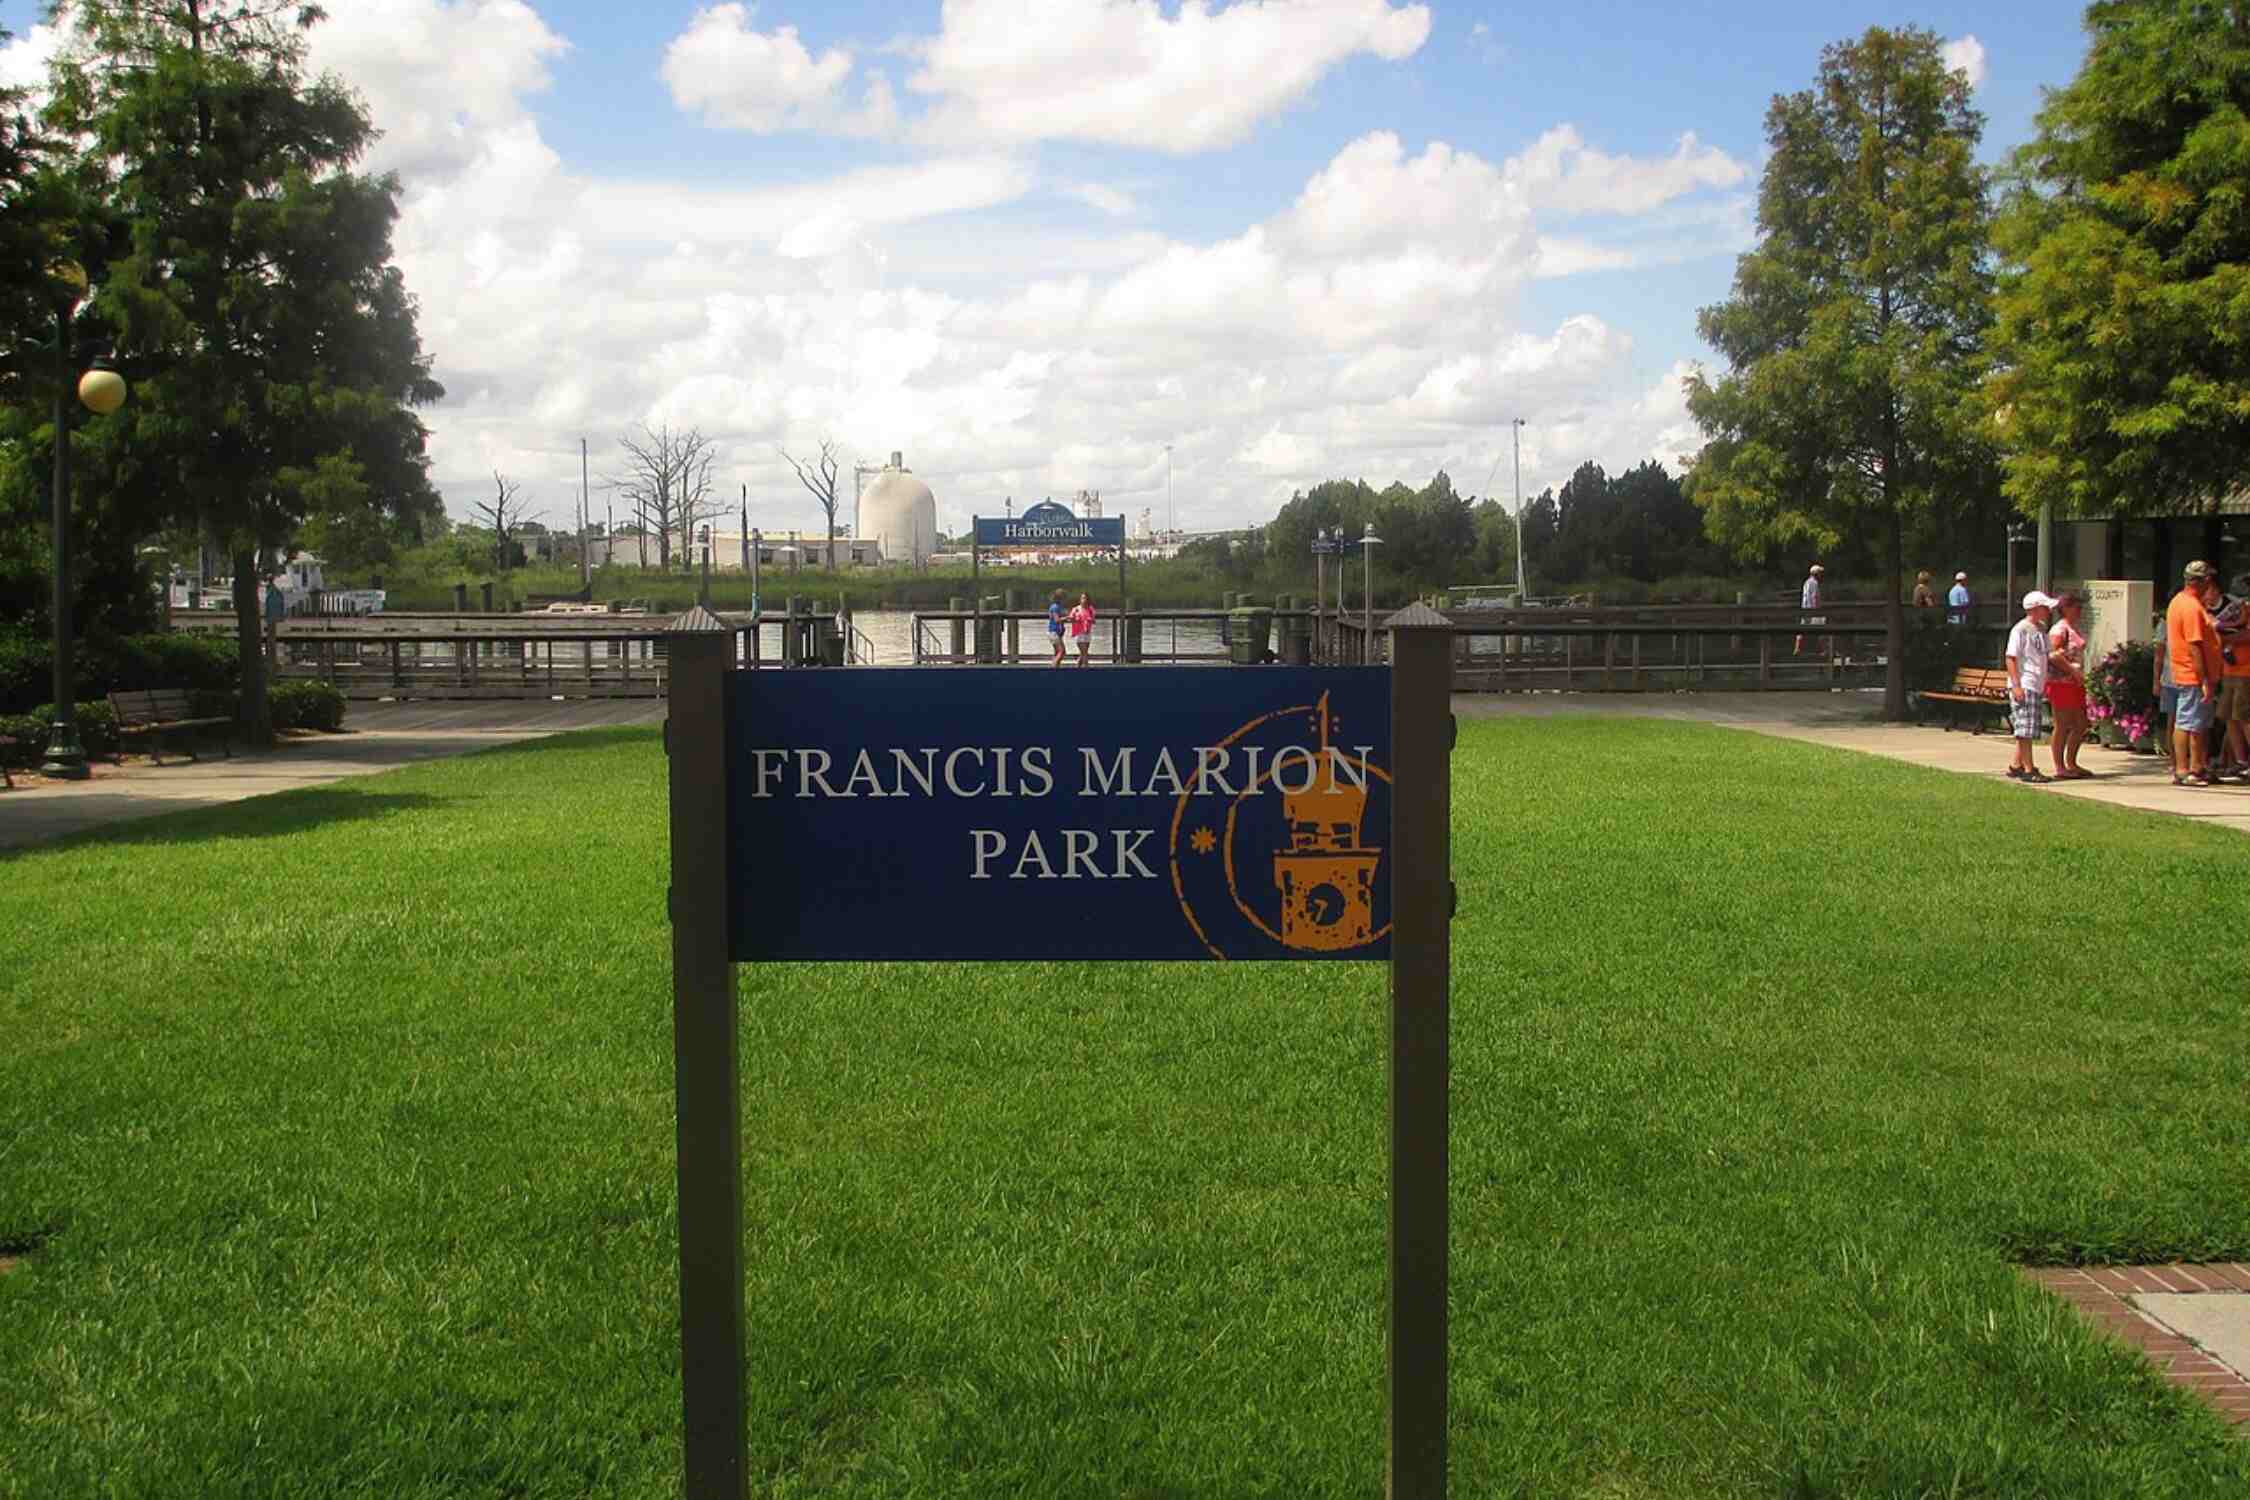 Francis Marion Park